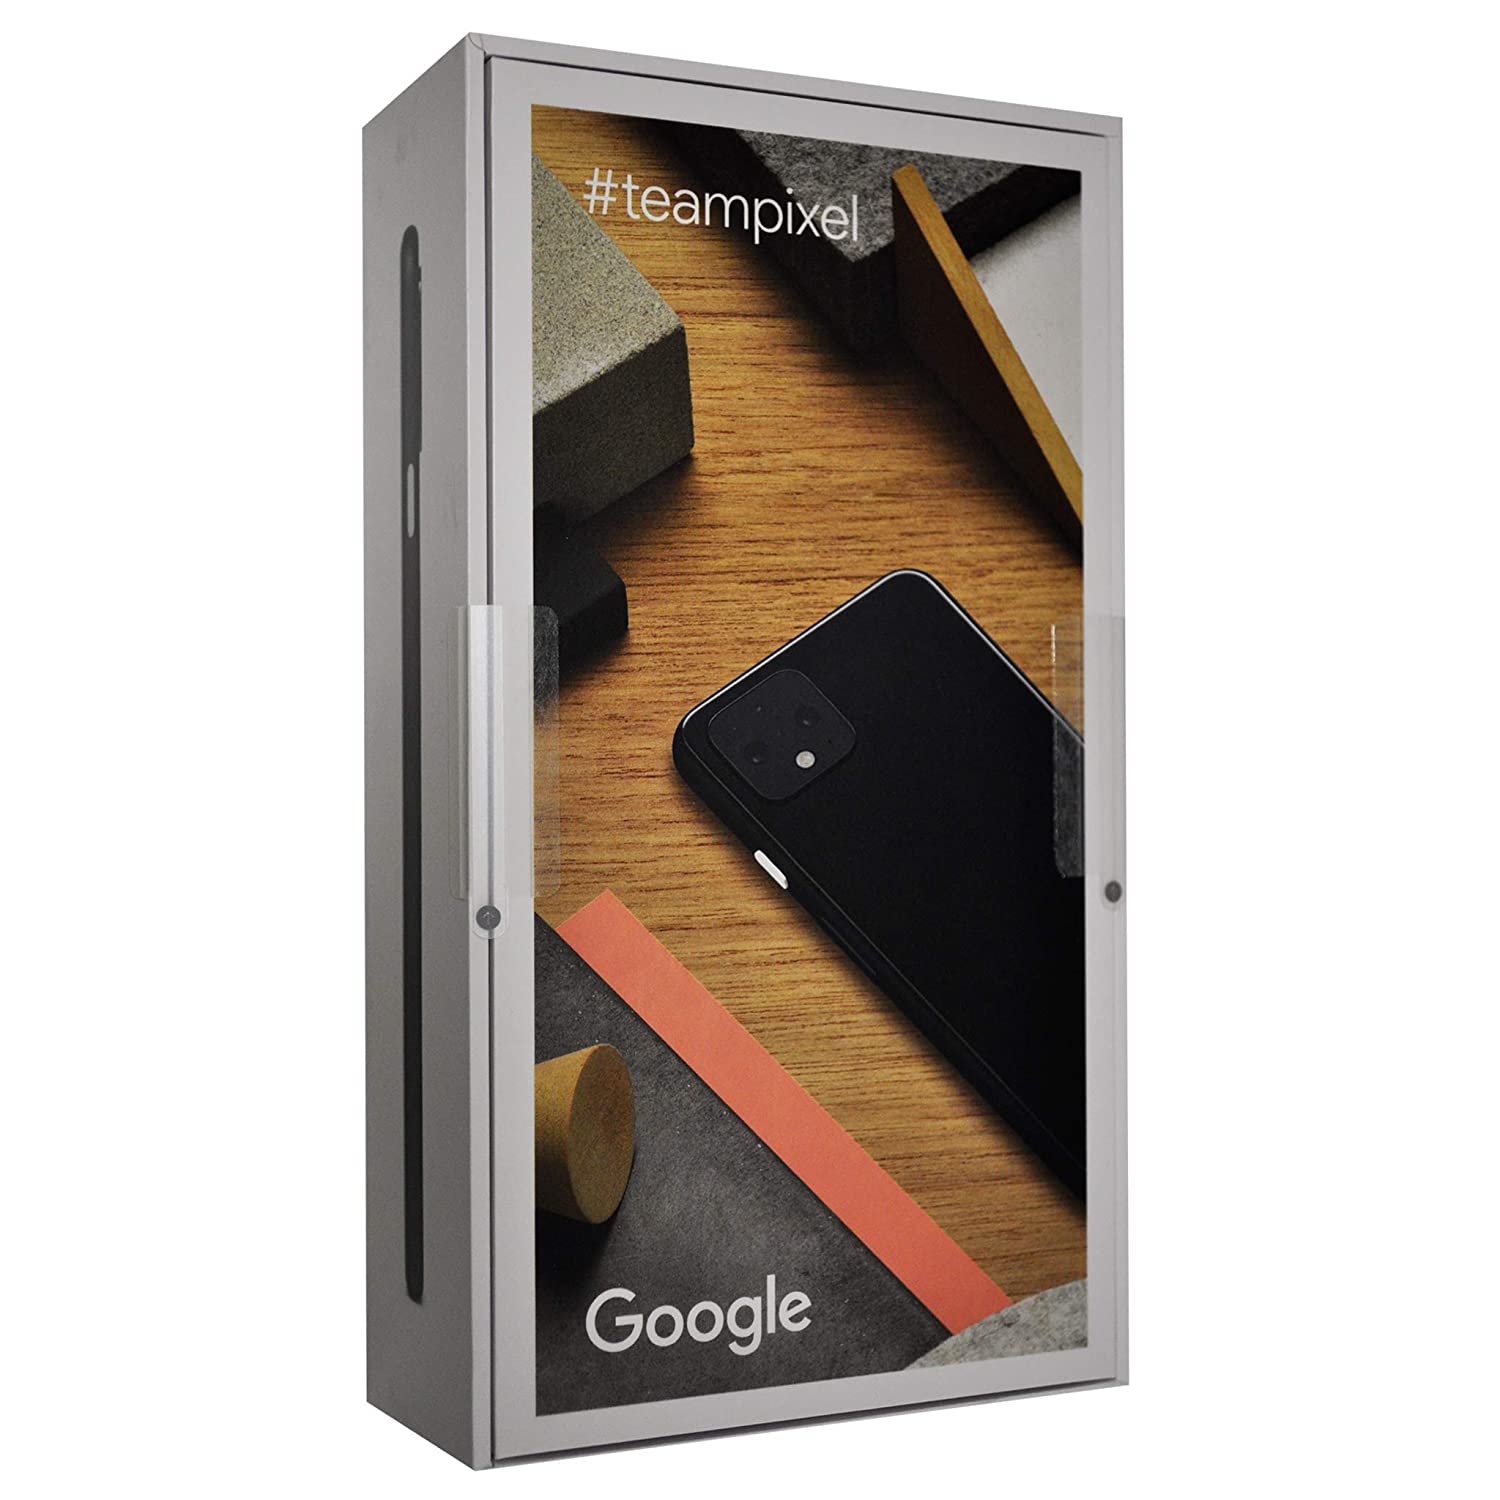 Google Pixel 4 (Just Black, 6GB RAM, 64GB Storage)